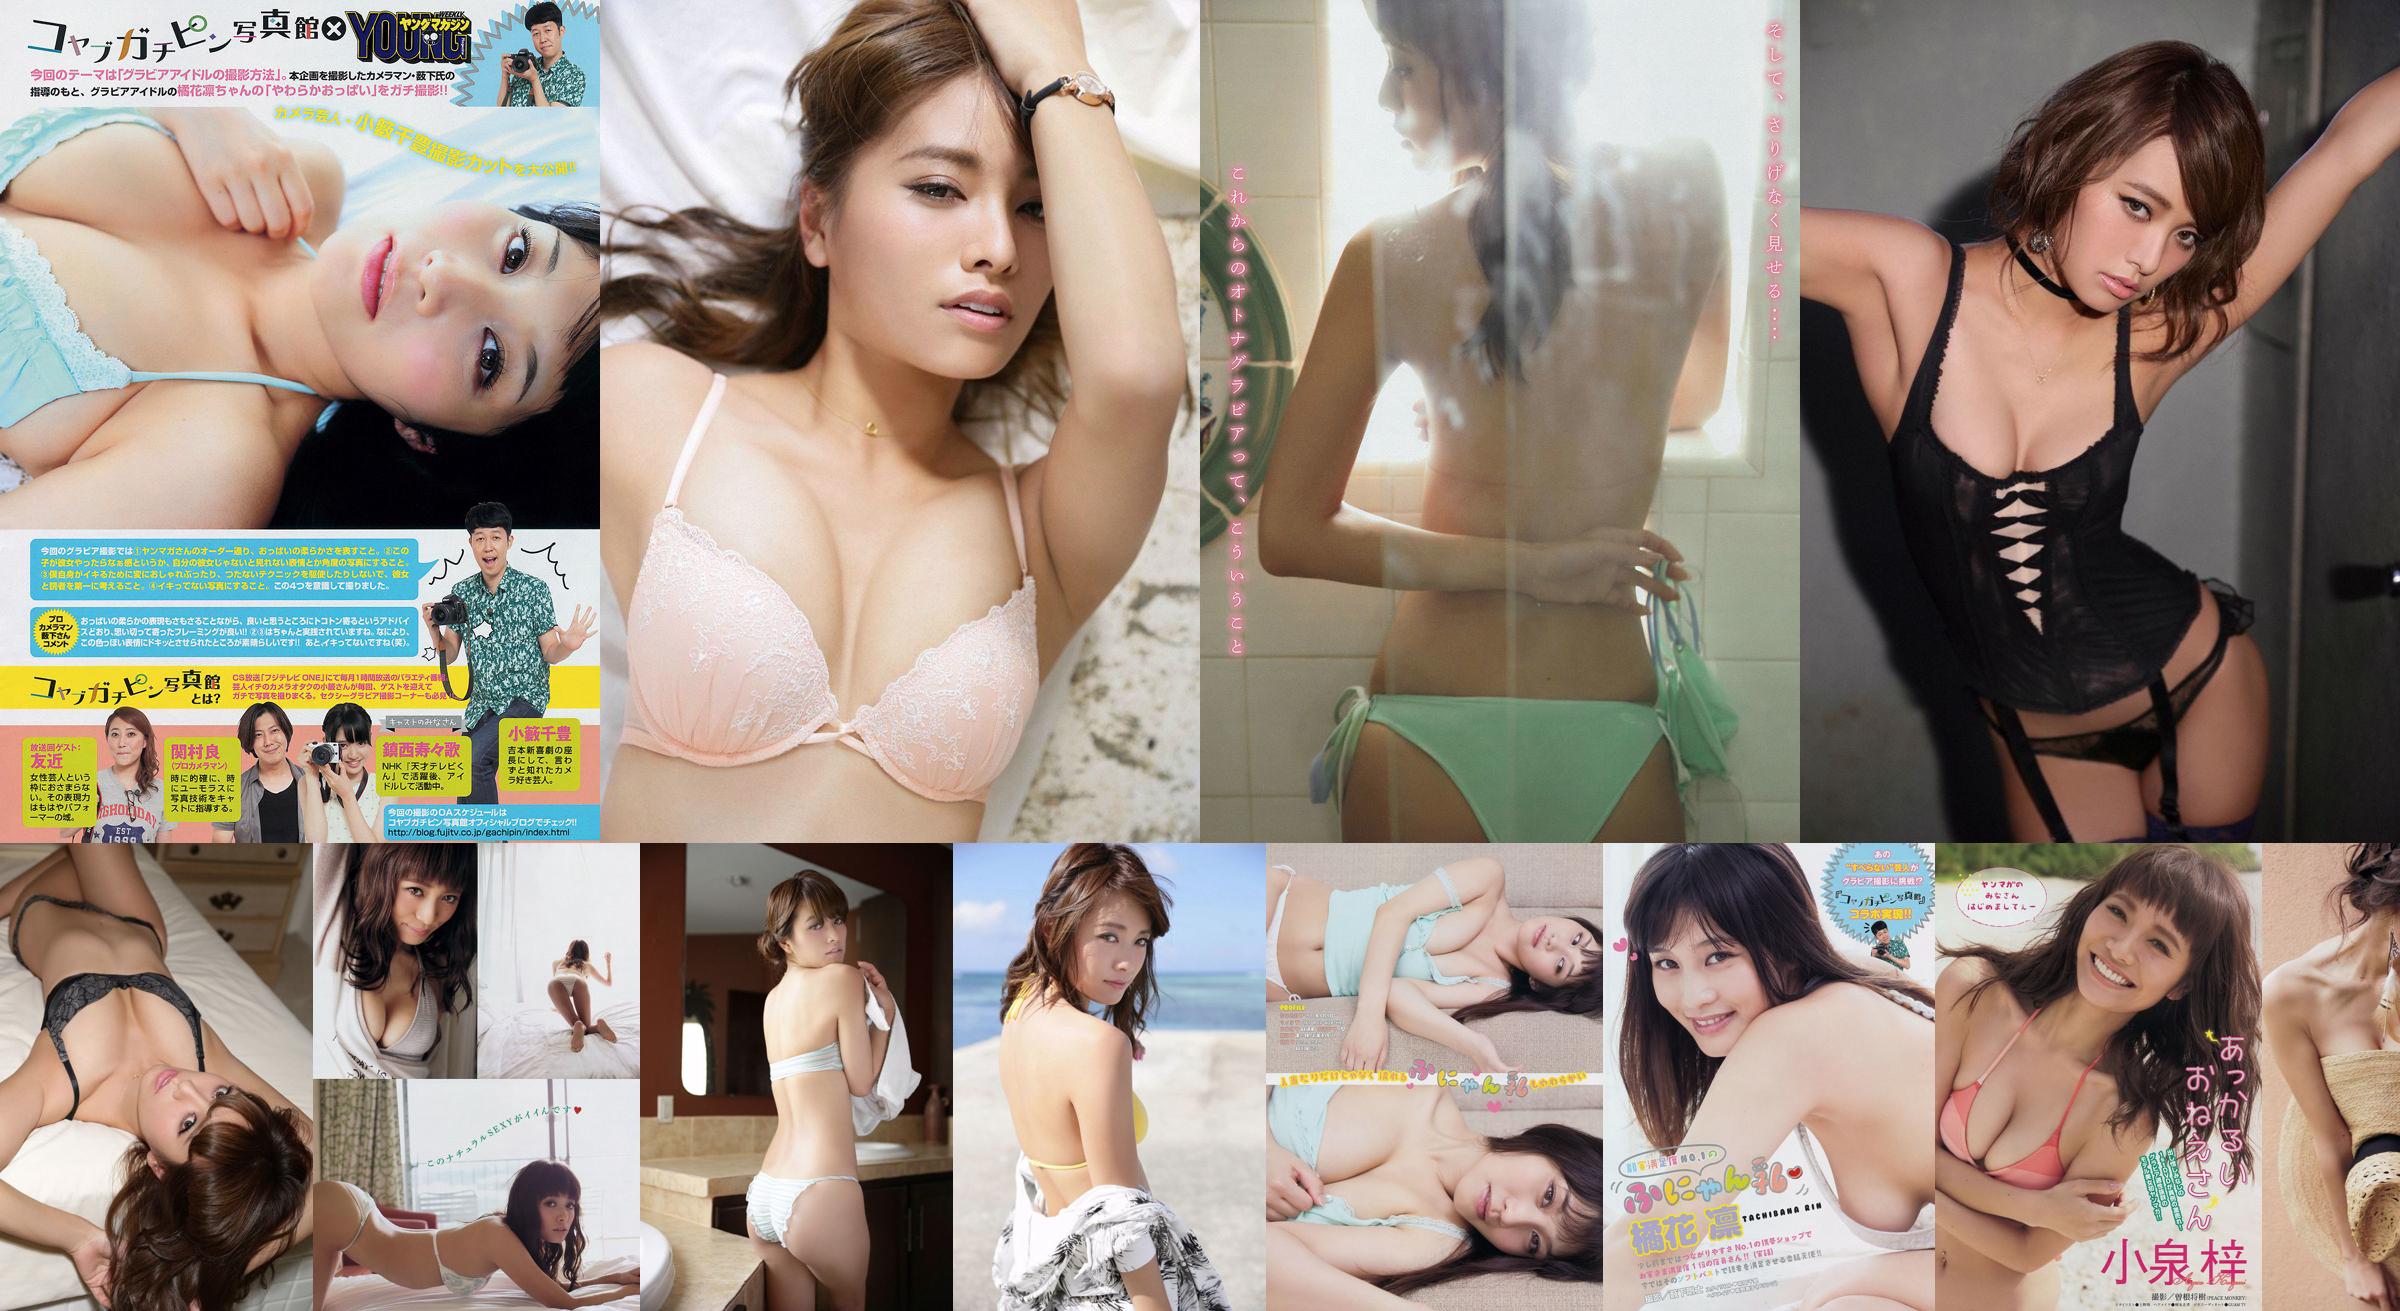 [Young Magazine] Azusa Koizumi Tachibana Rin 2014 No.43 Photo Magazine No.841bb8 Pagina 1